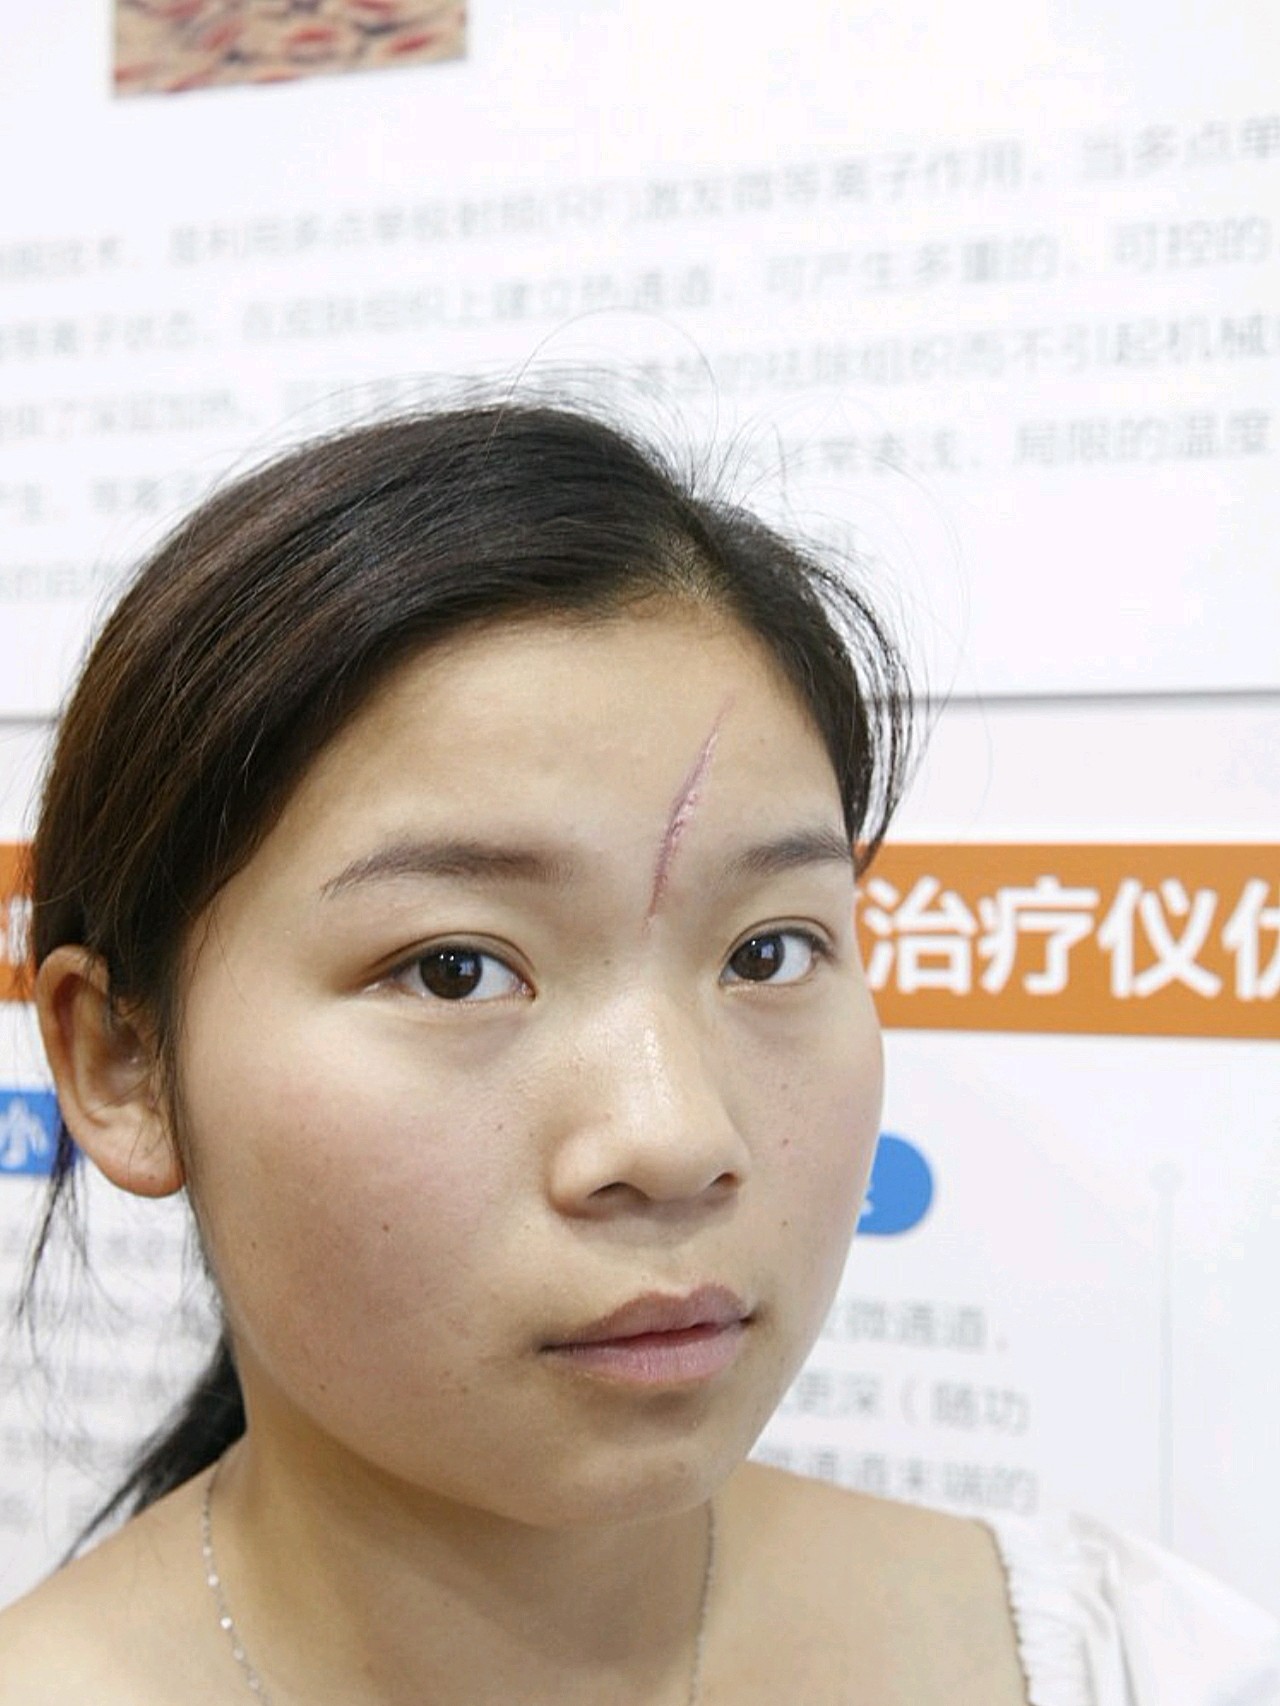 女人图脸上一条疤痕额头有疤长疤痕打球额头撞破了小孩脸上凹陷疤痕